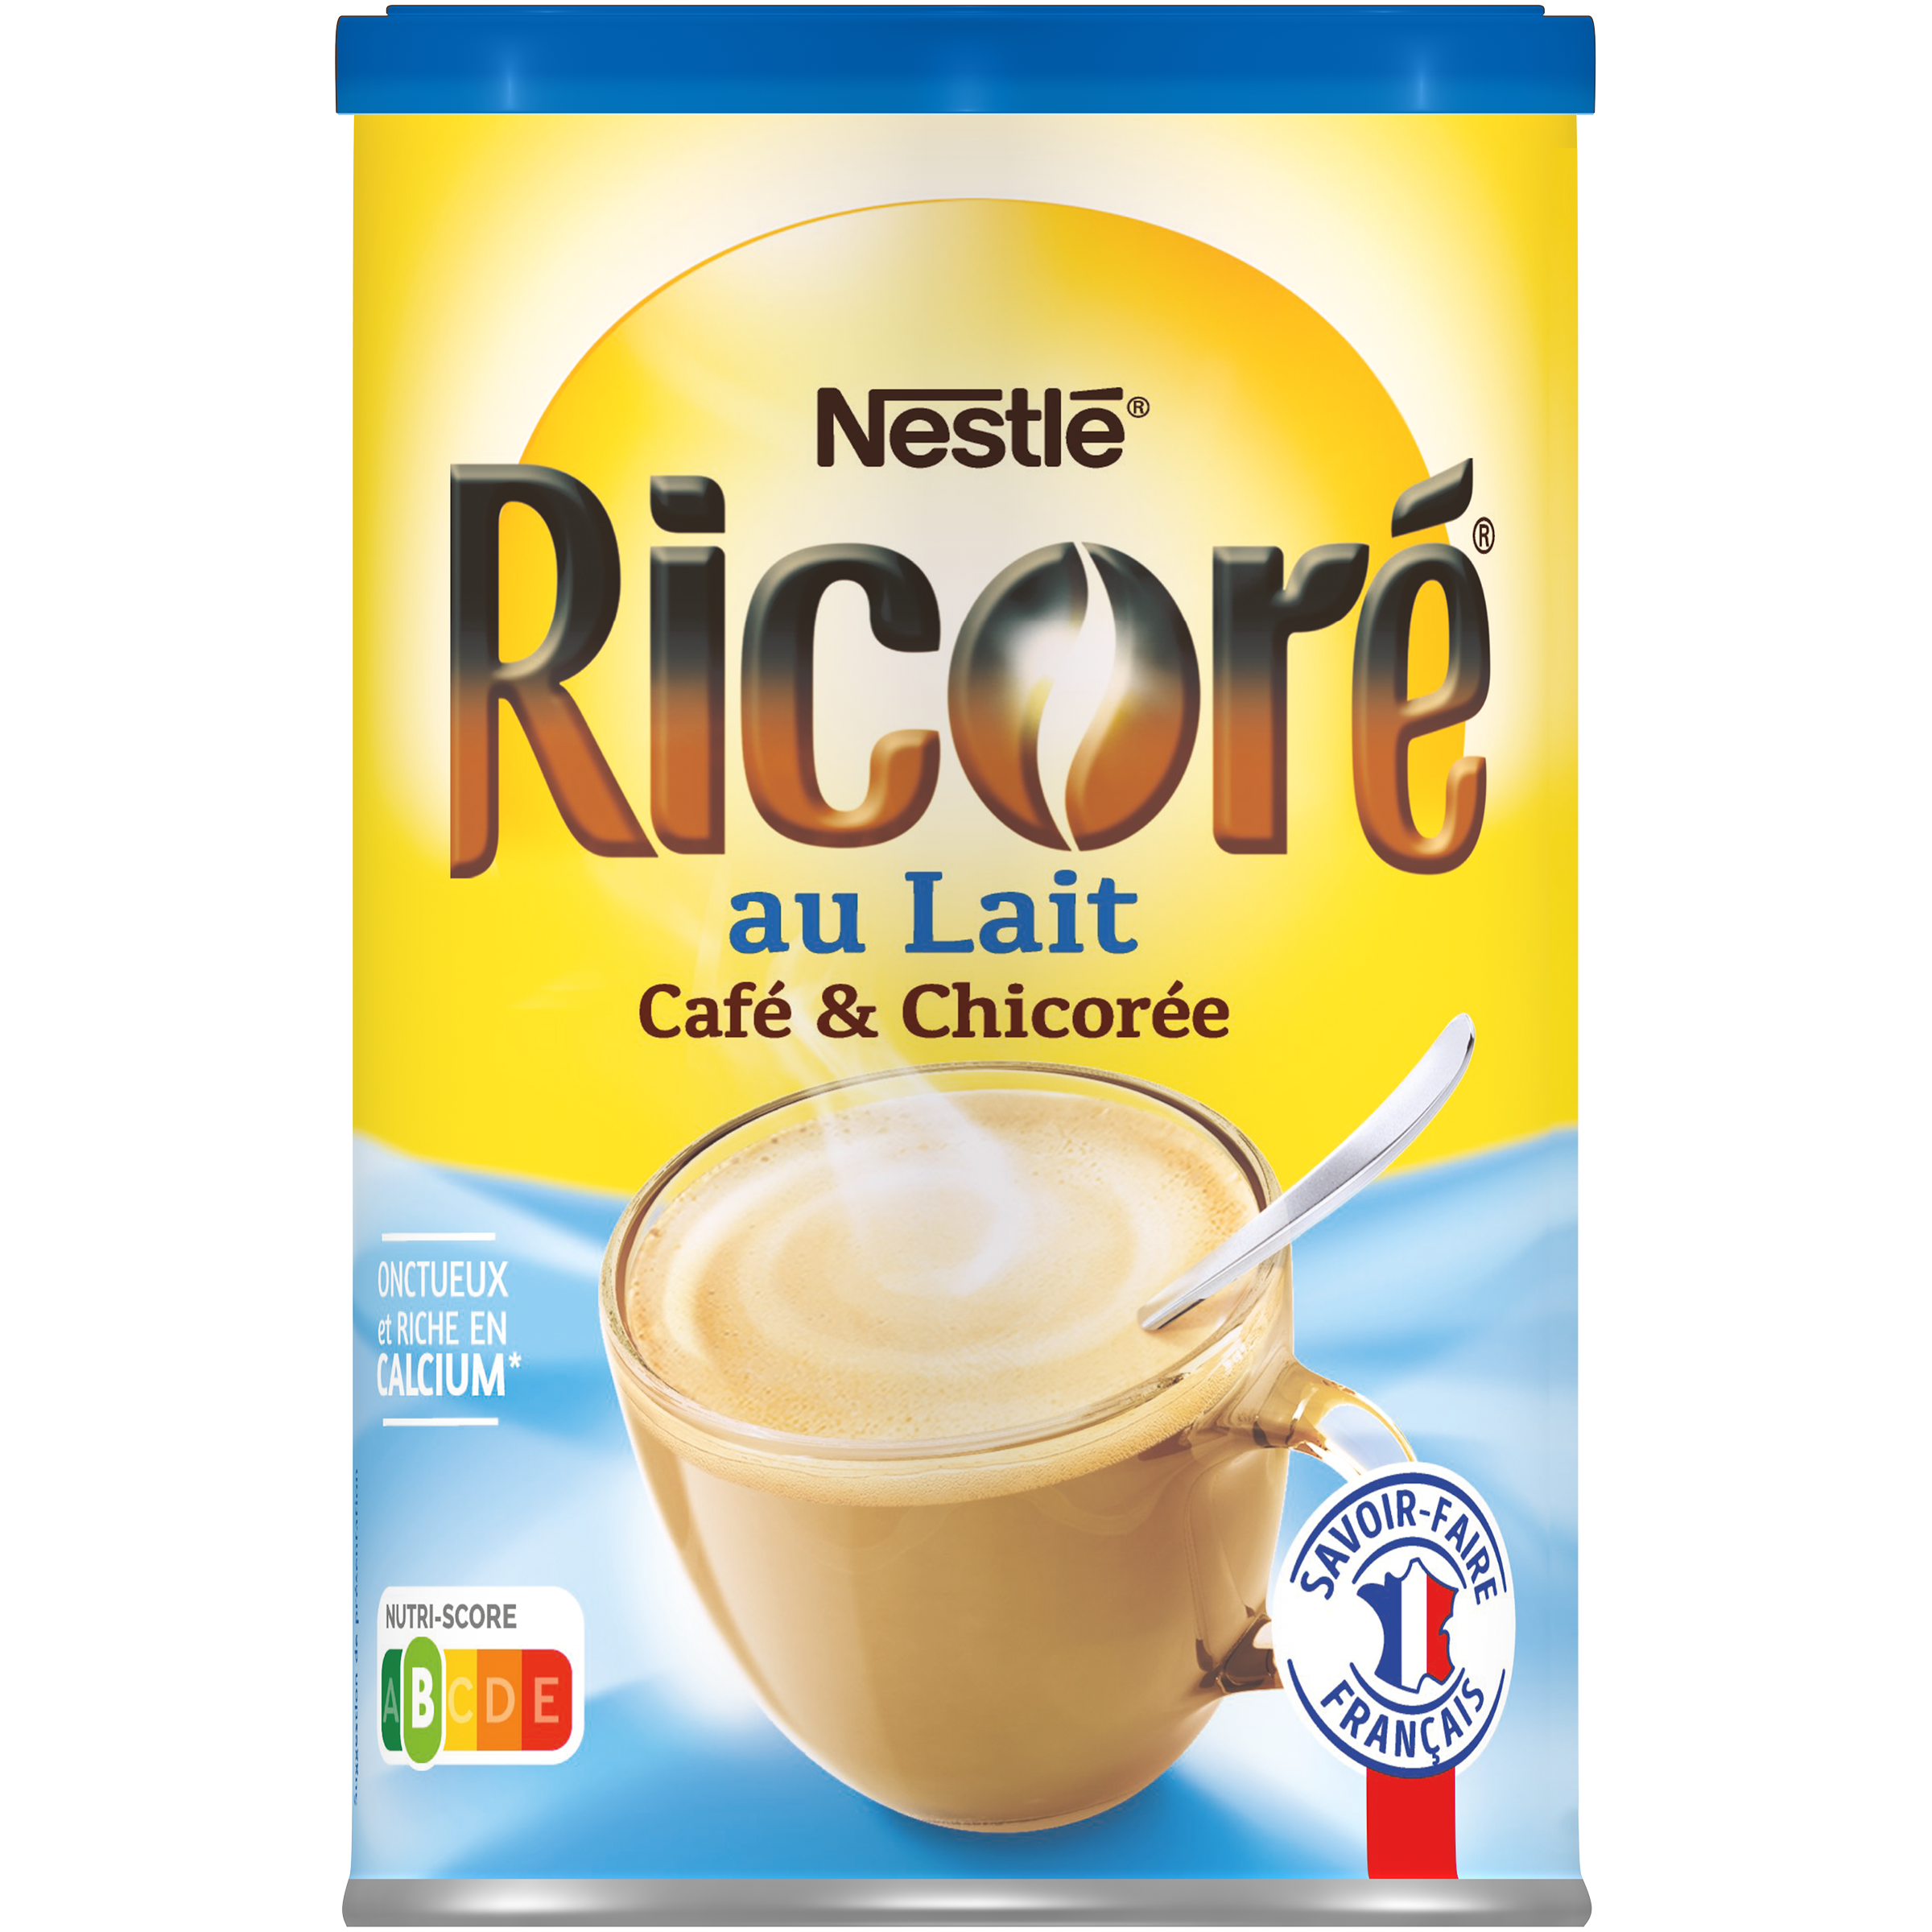 Nestle ricore au lait bonjour instant café avec du lait et